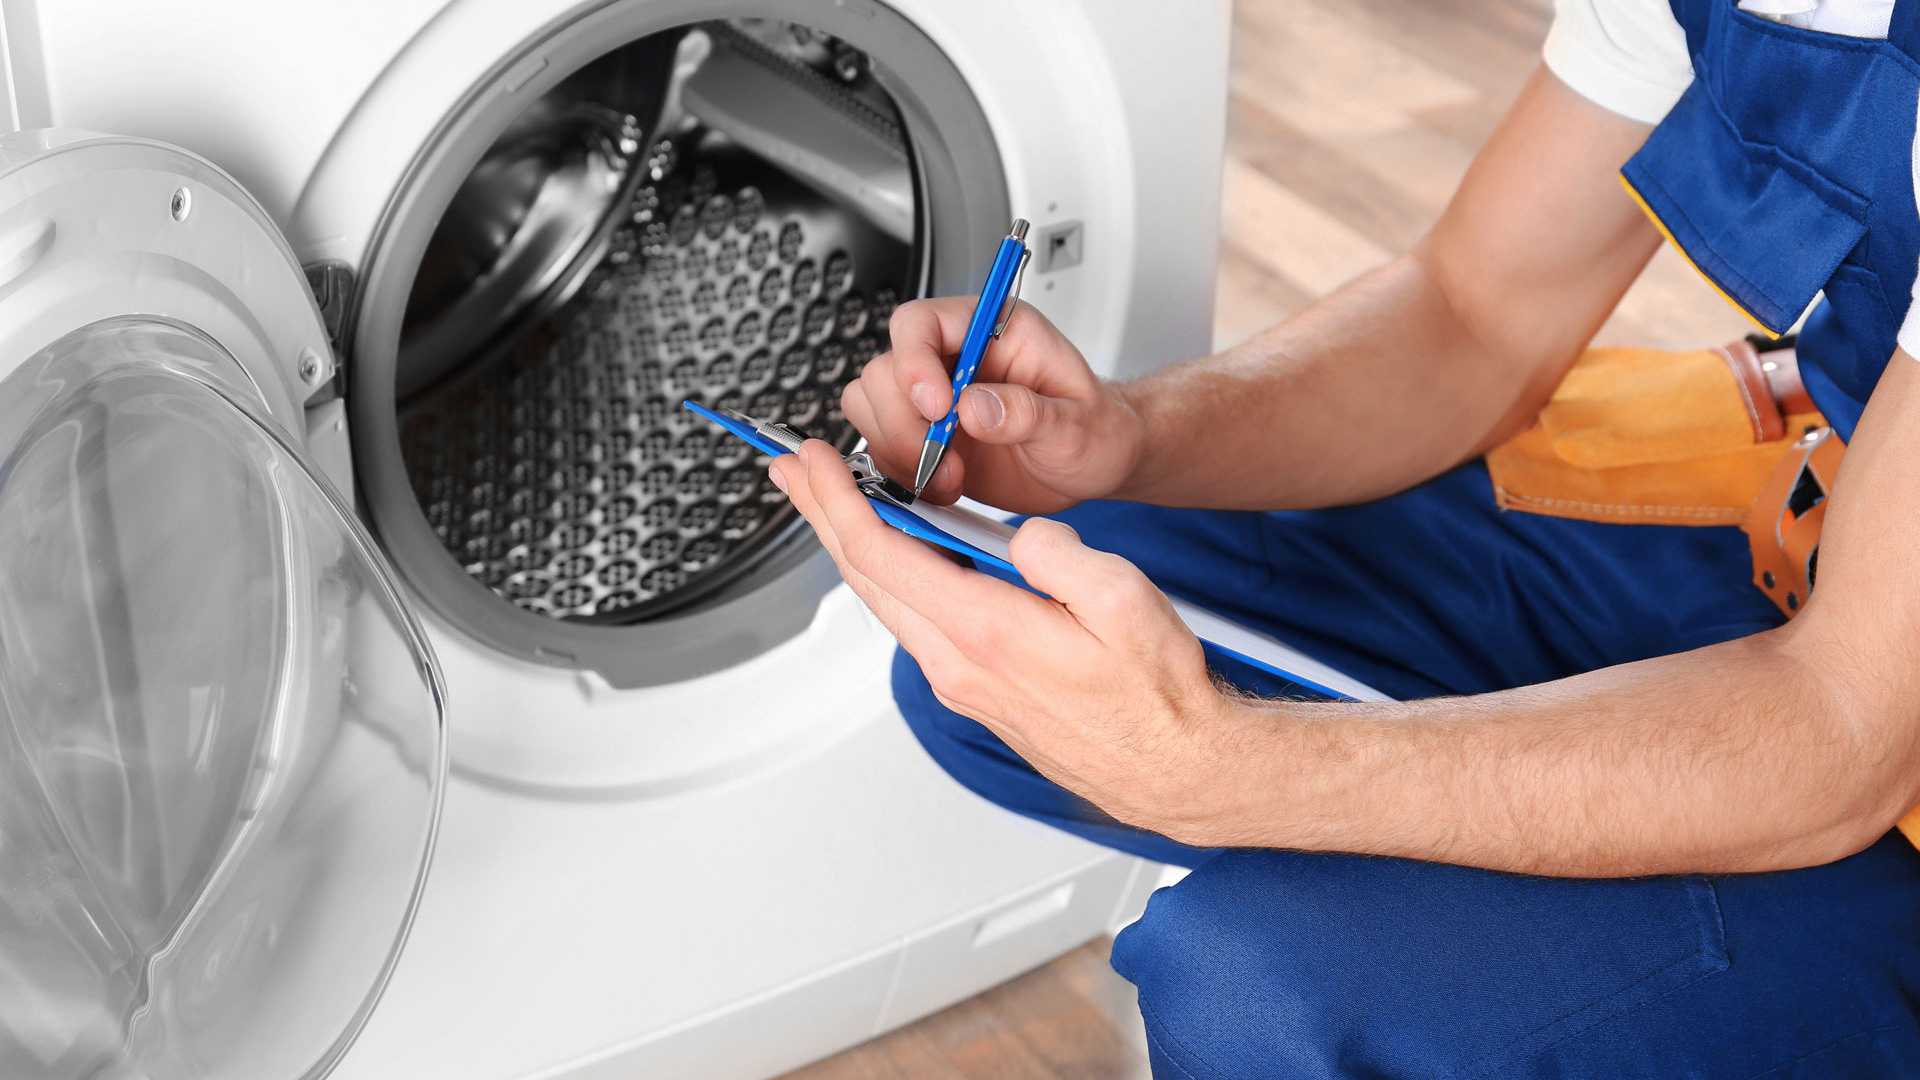 Комплексный ремонт стиральных машин: от простых поломок до сложных неисправностей